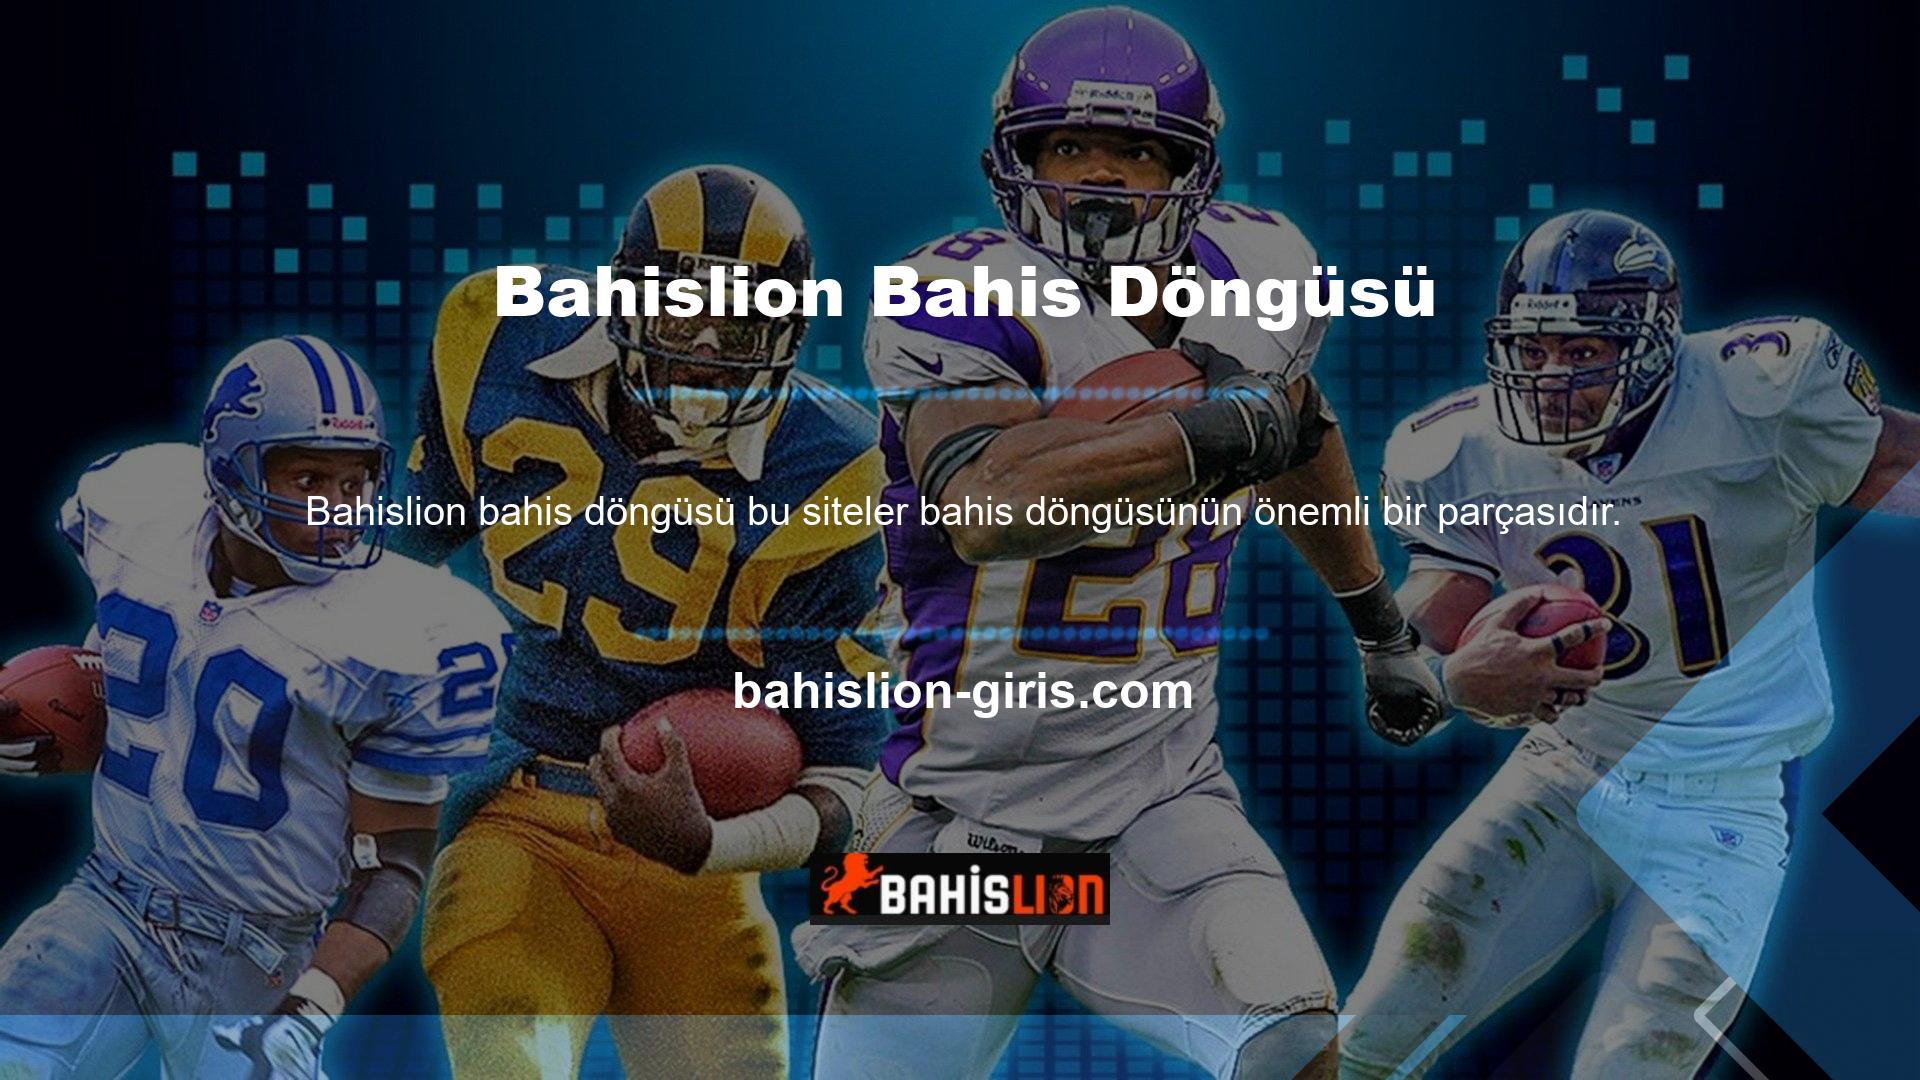 Bahislion Gaming'in hedeflerinden biri, oyun endüstrisinde eksik olan benzersiz promosyonlara odaklanmaktır